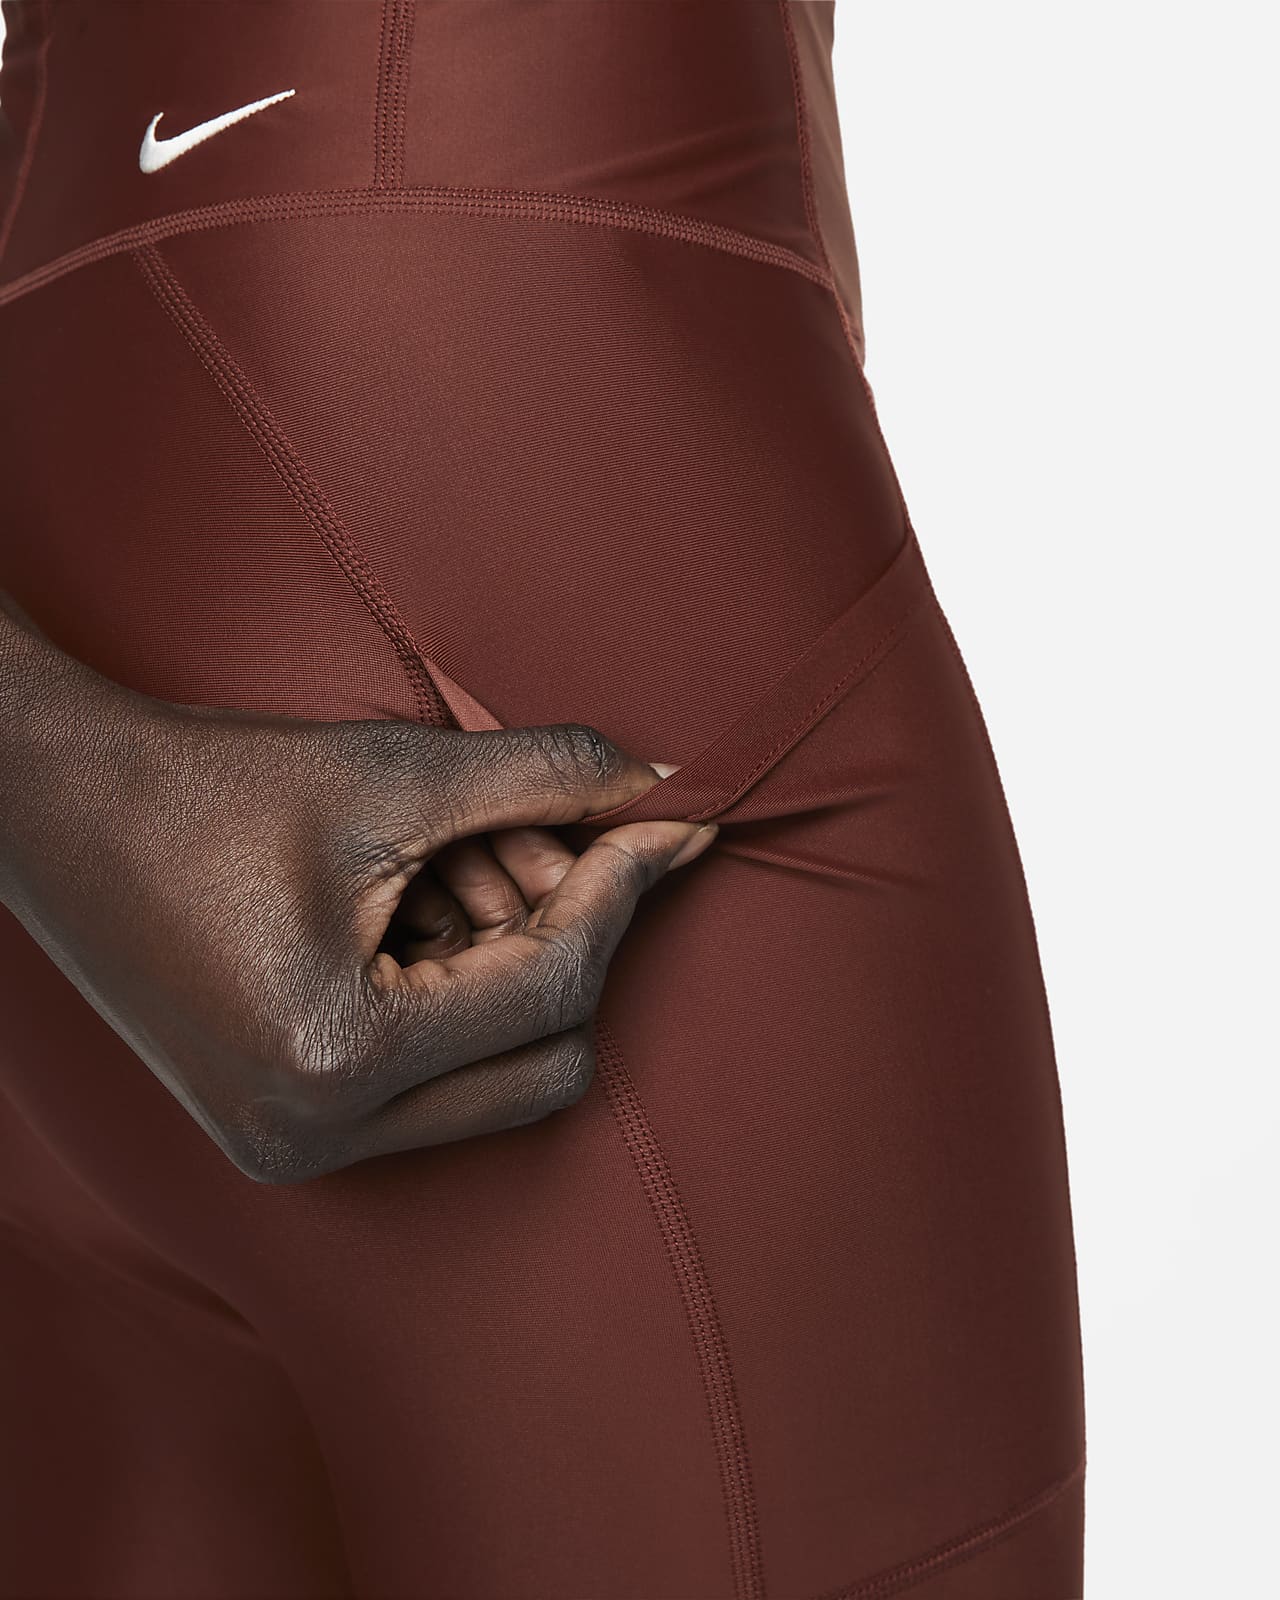 Legging Nike Dri-FIT ADV ACG New Sands Feminina da Nike com menor preço -  Melhor Comprar